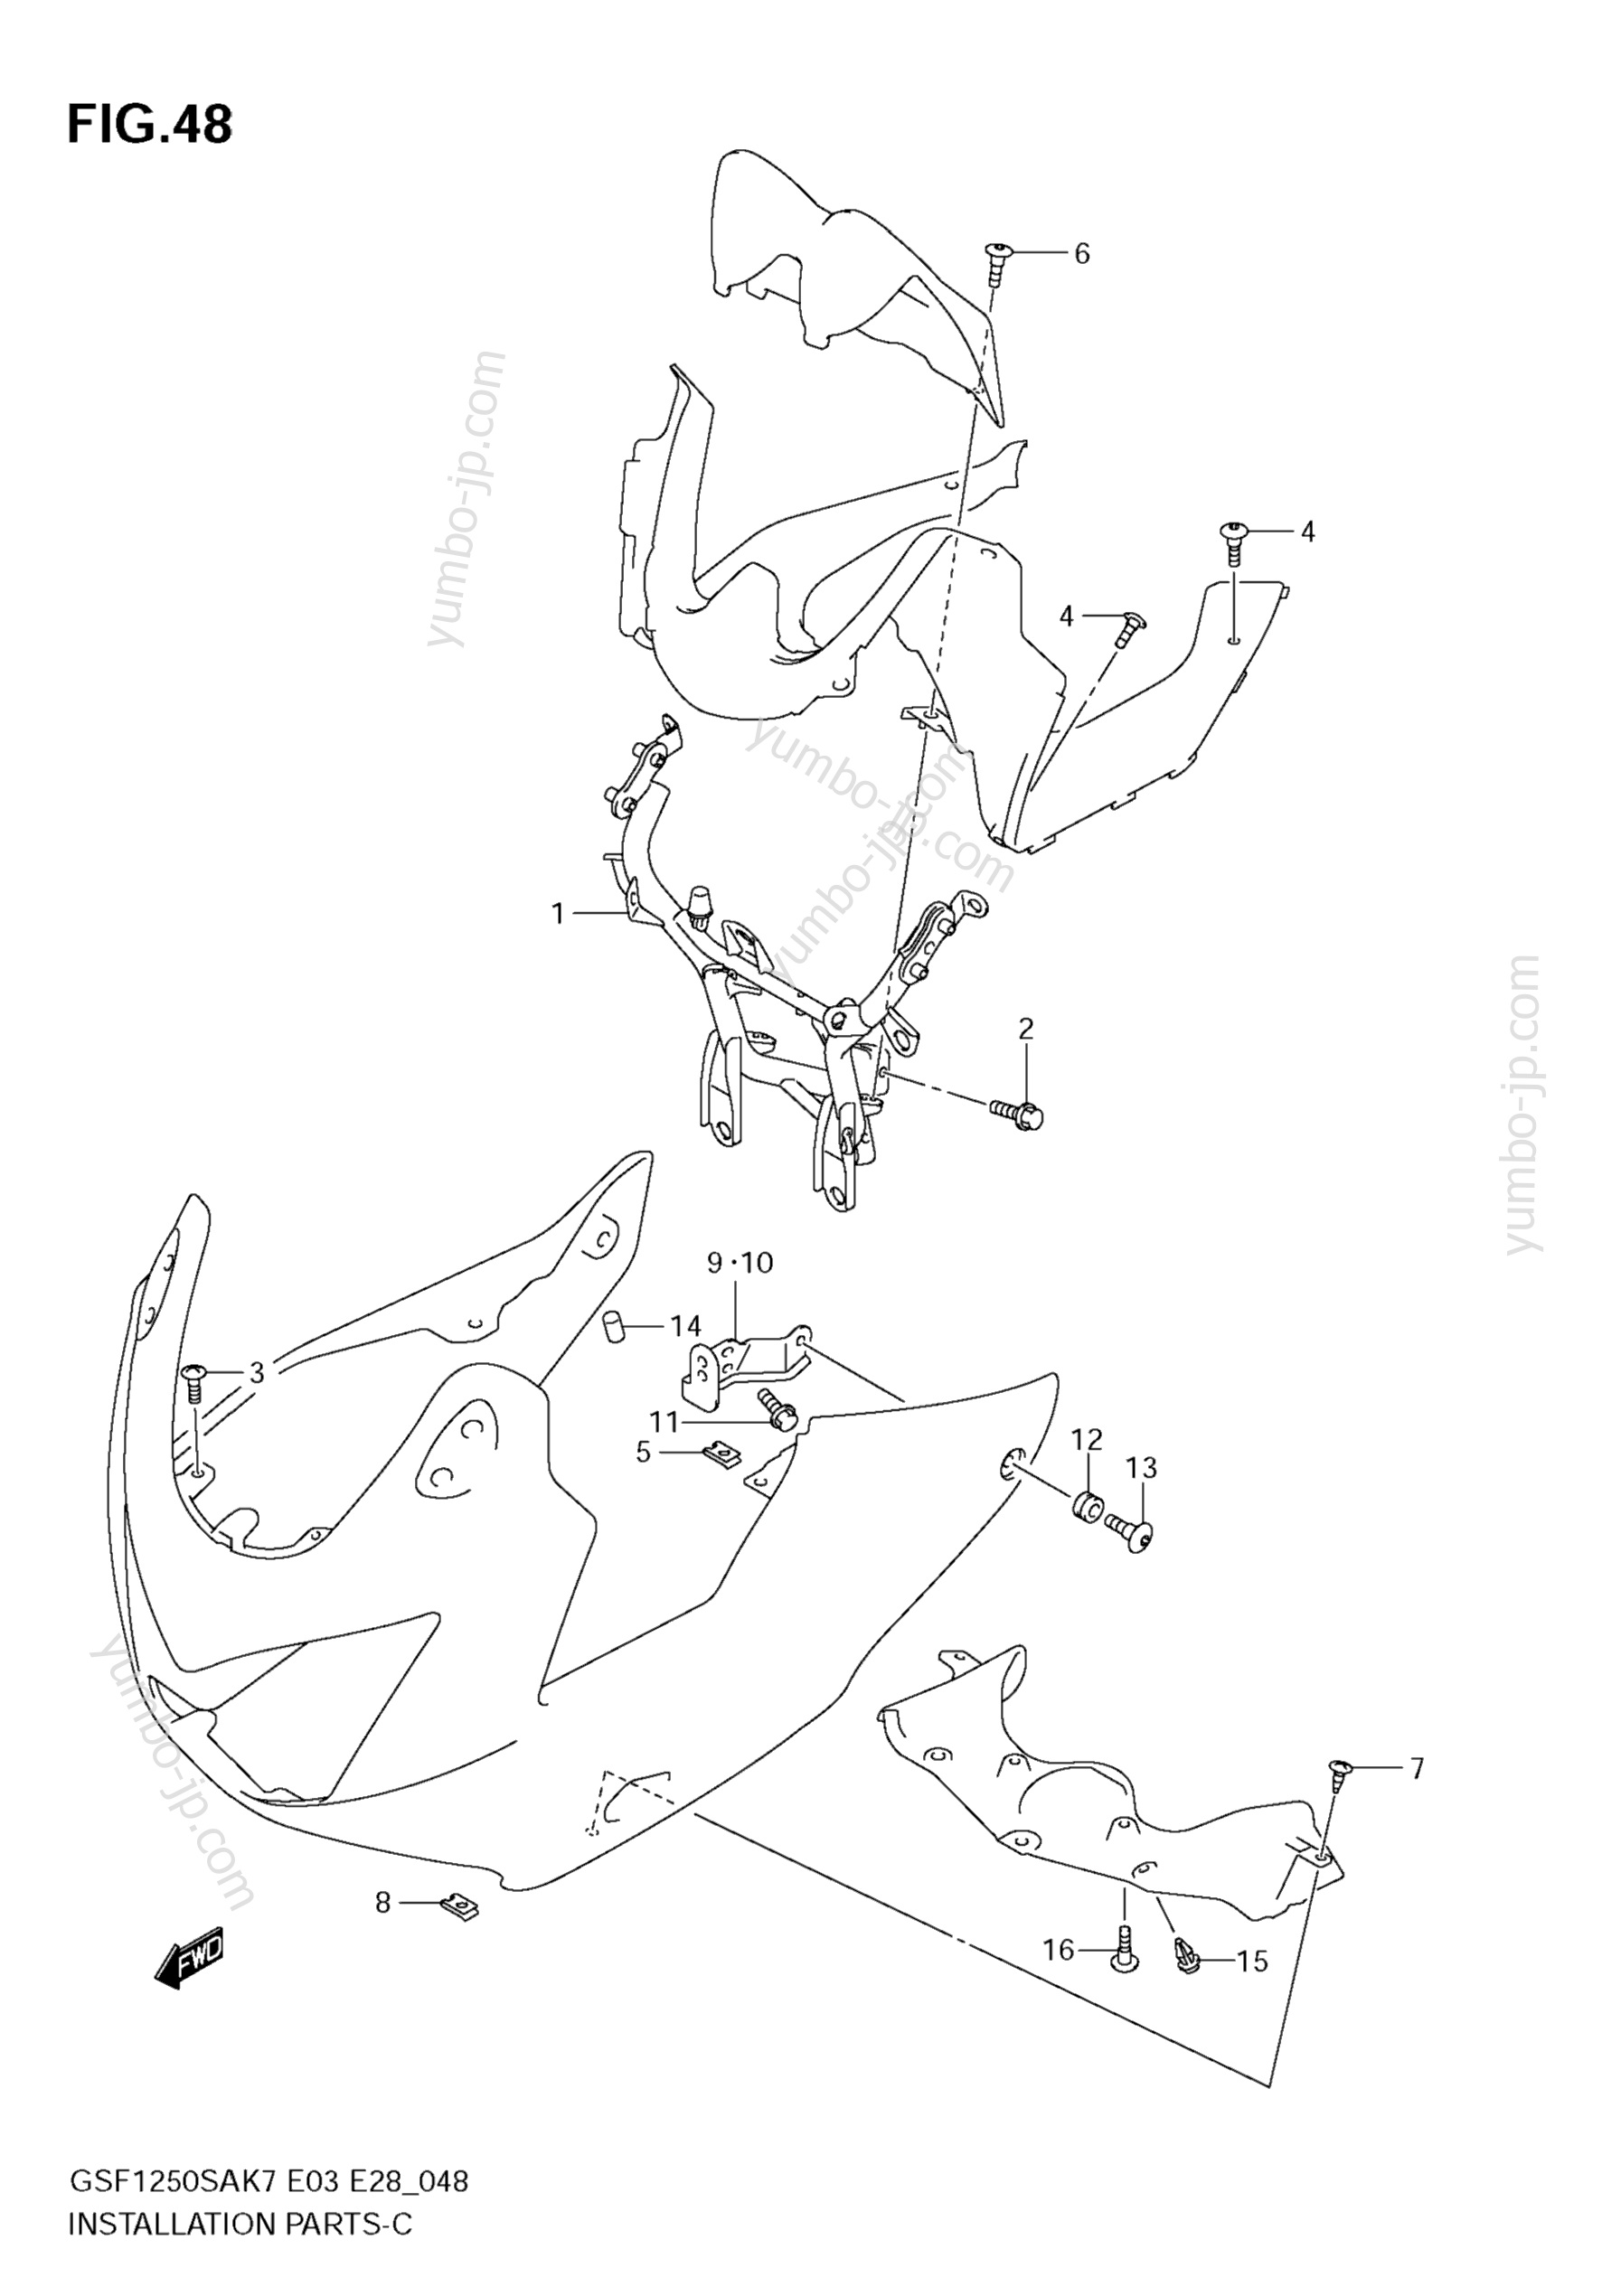 COWLING INSTALLATION PARTS для мотоциклов SUZUKI Bandit (GSF1250S) 2009 г.